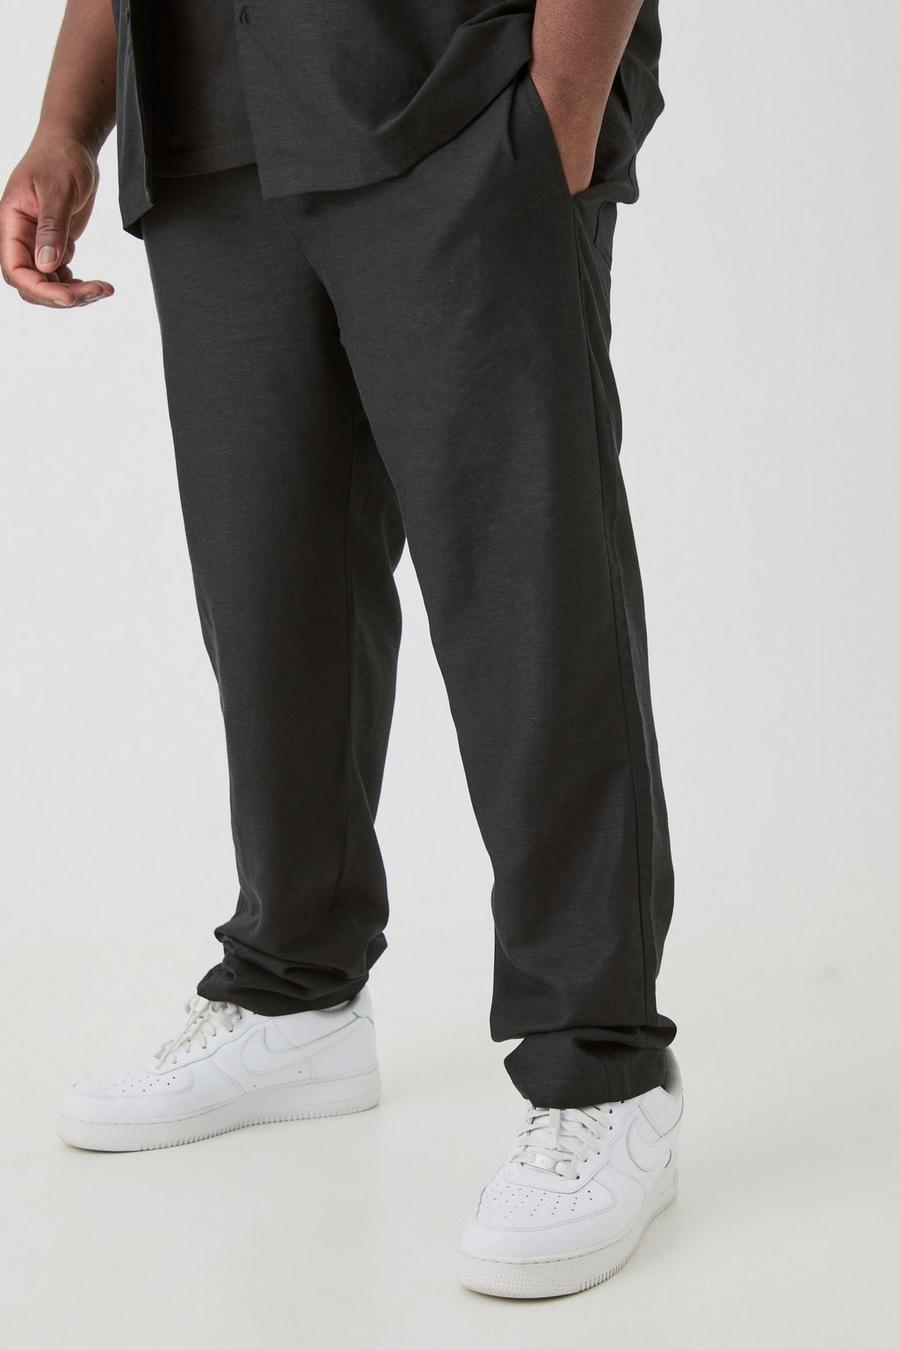 Pantalón Plus de lino ajustado con cintura elástica en negro, Black